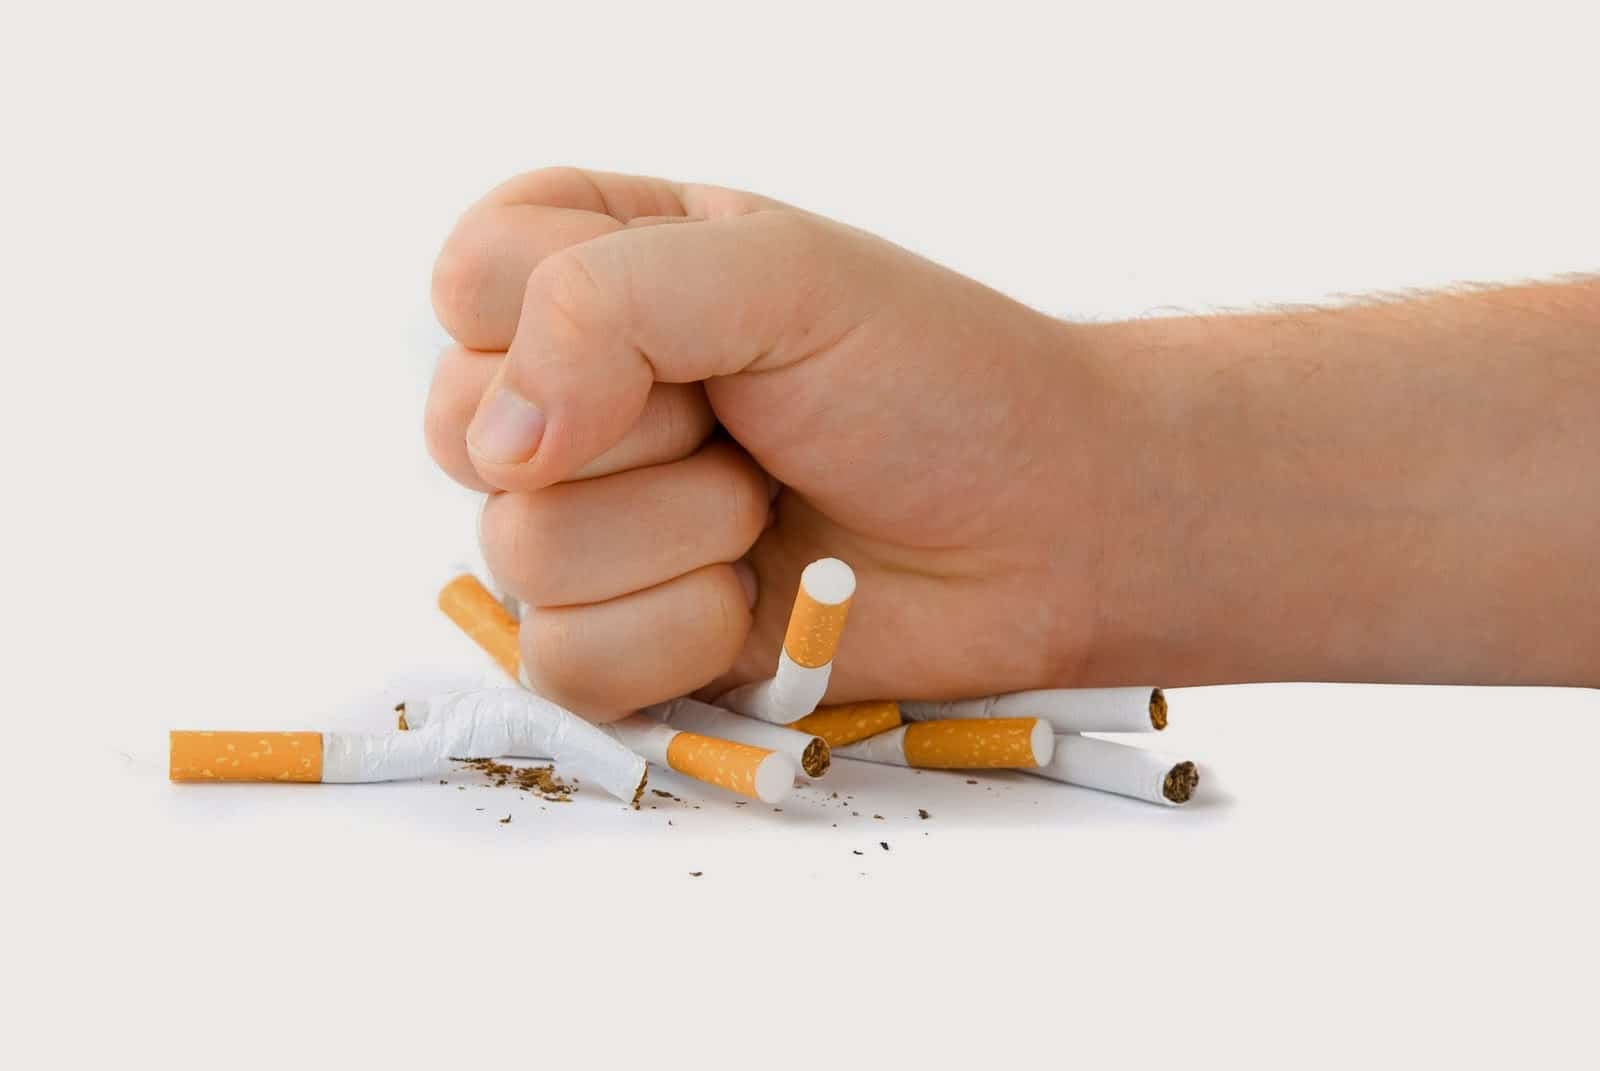 Le lien supposé entre vapotage et sevrage tabagique2